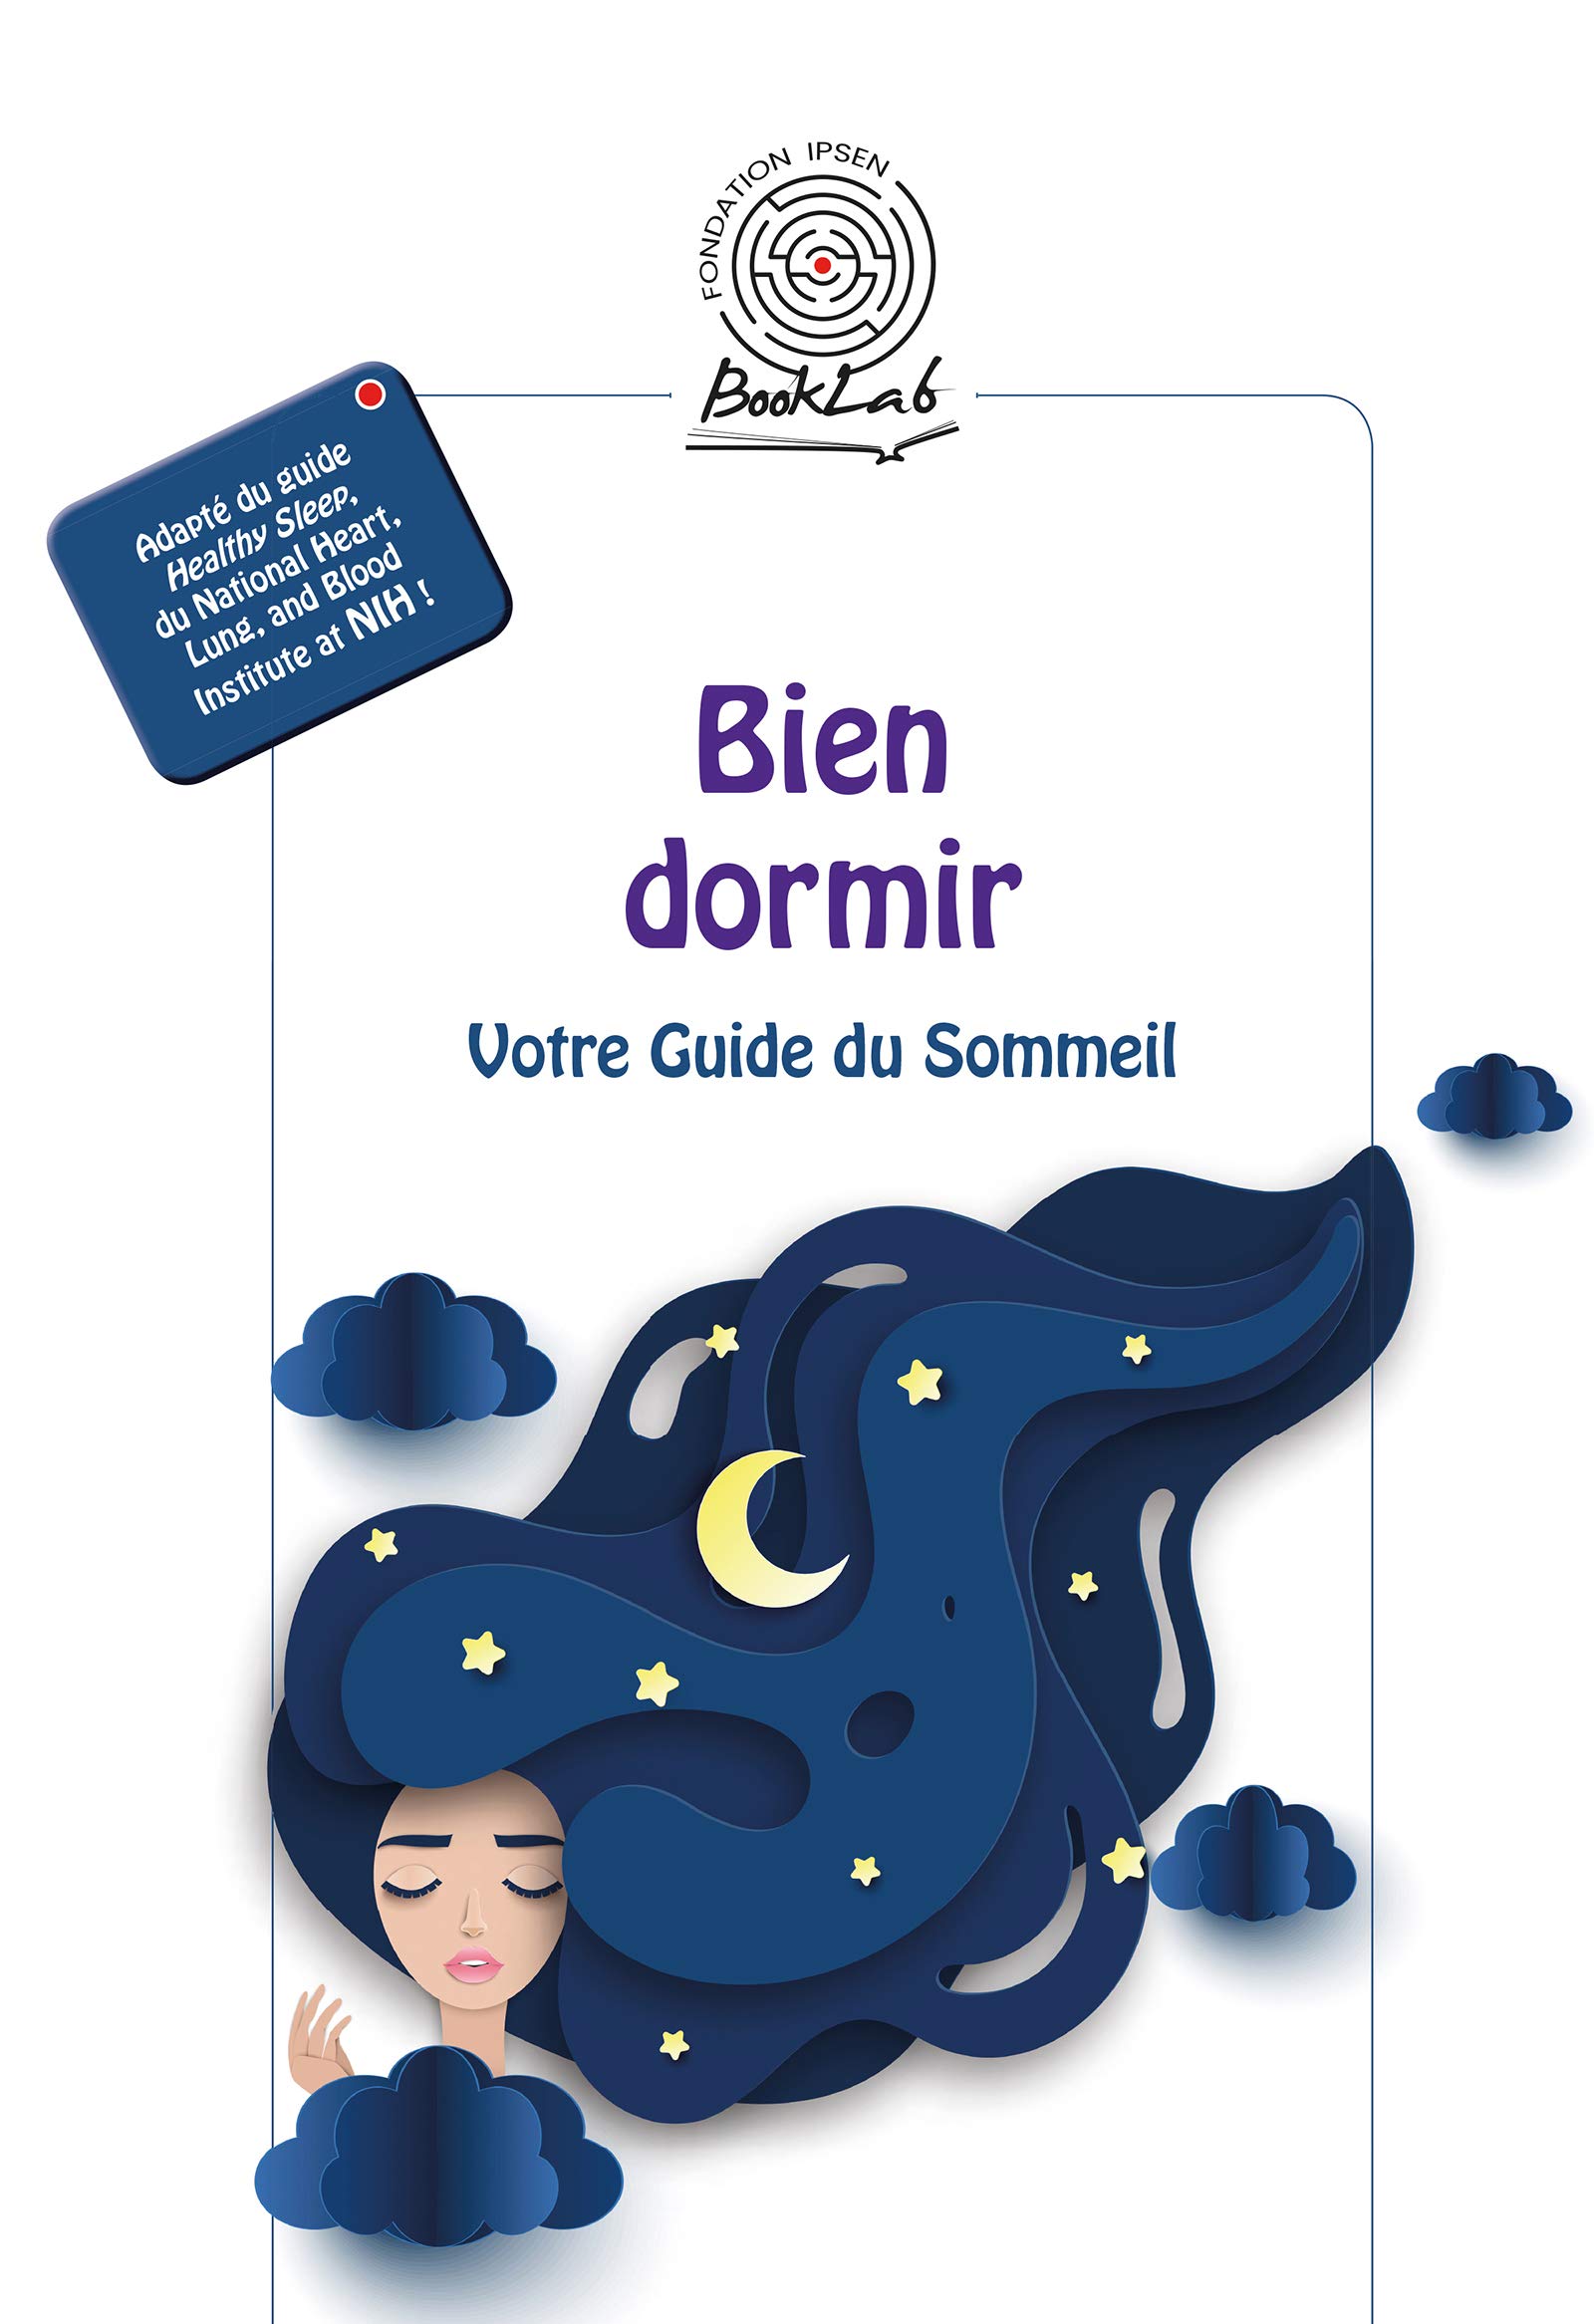 Bien dormir: Votre Guide du Sommeil (French Edition)